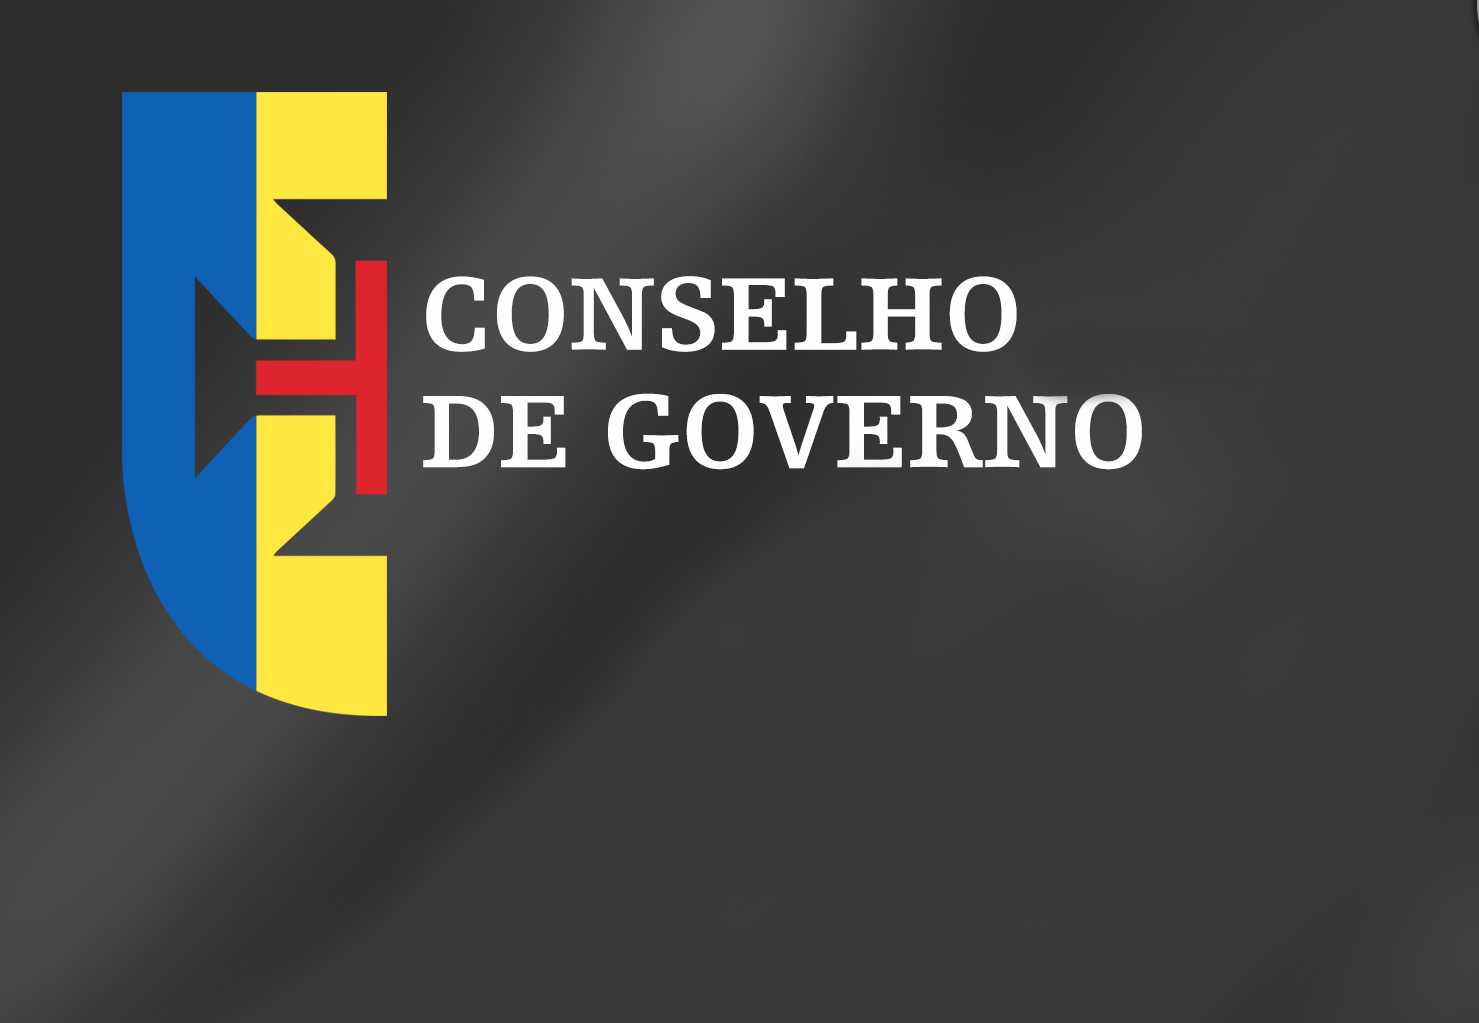 Conclusões Conselho de Governo - 30 de junho de 2016